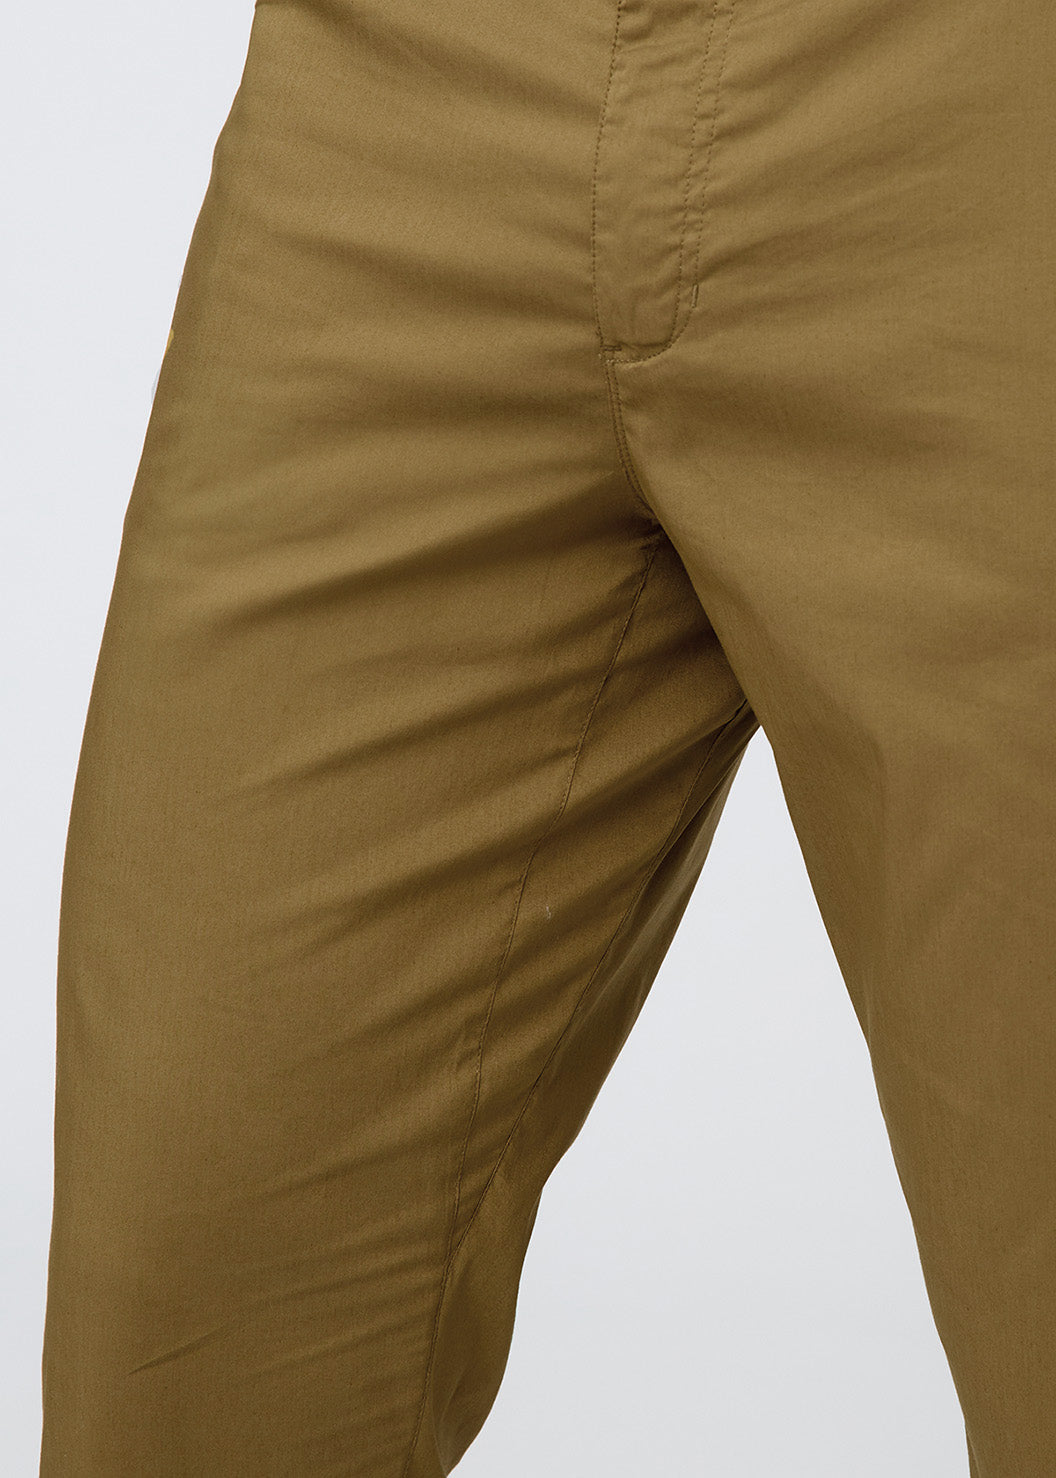 mens brown lightweight summer travel pants gusset